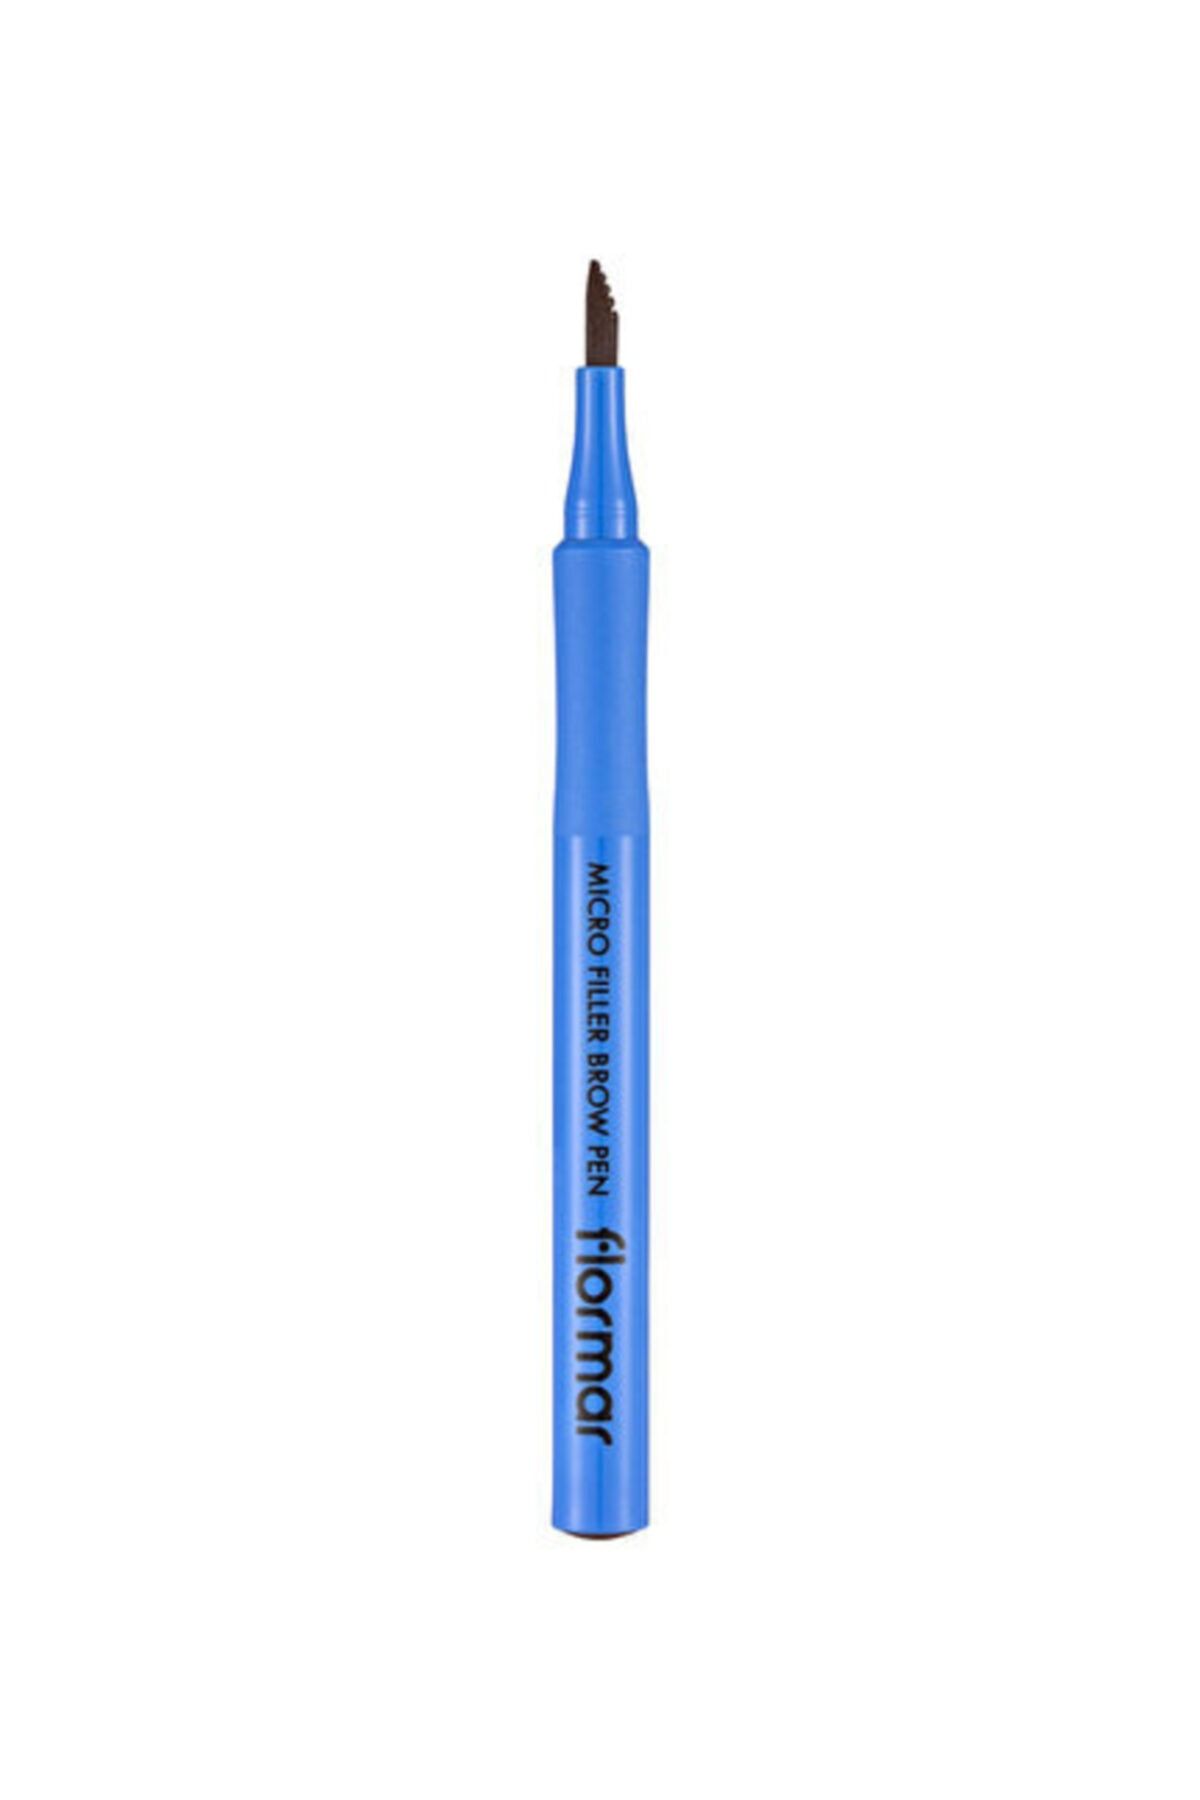 Flormar Mıcro Fıller Brow Pen Ince Çizgilerle , Suya Dayanıklı Kaş Kalemi | 1 Ml 3 Dark Brown